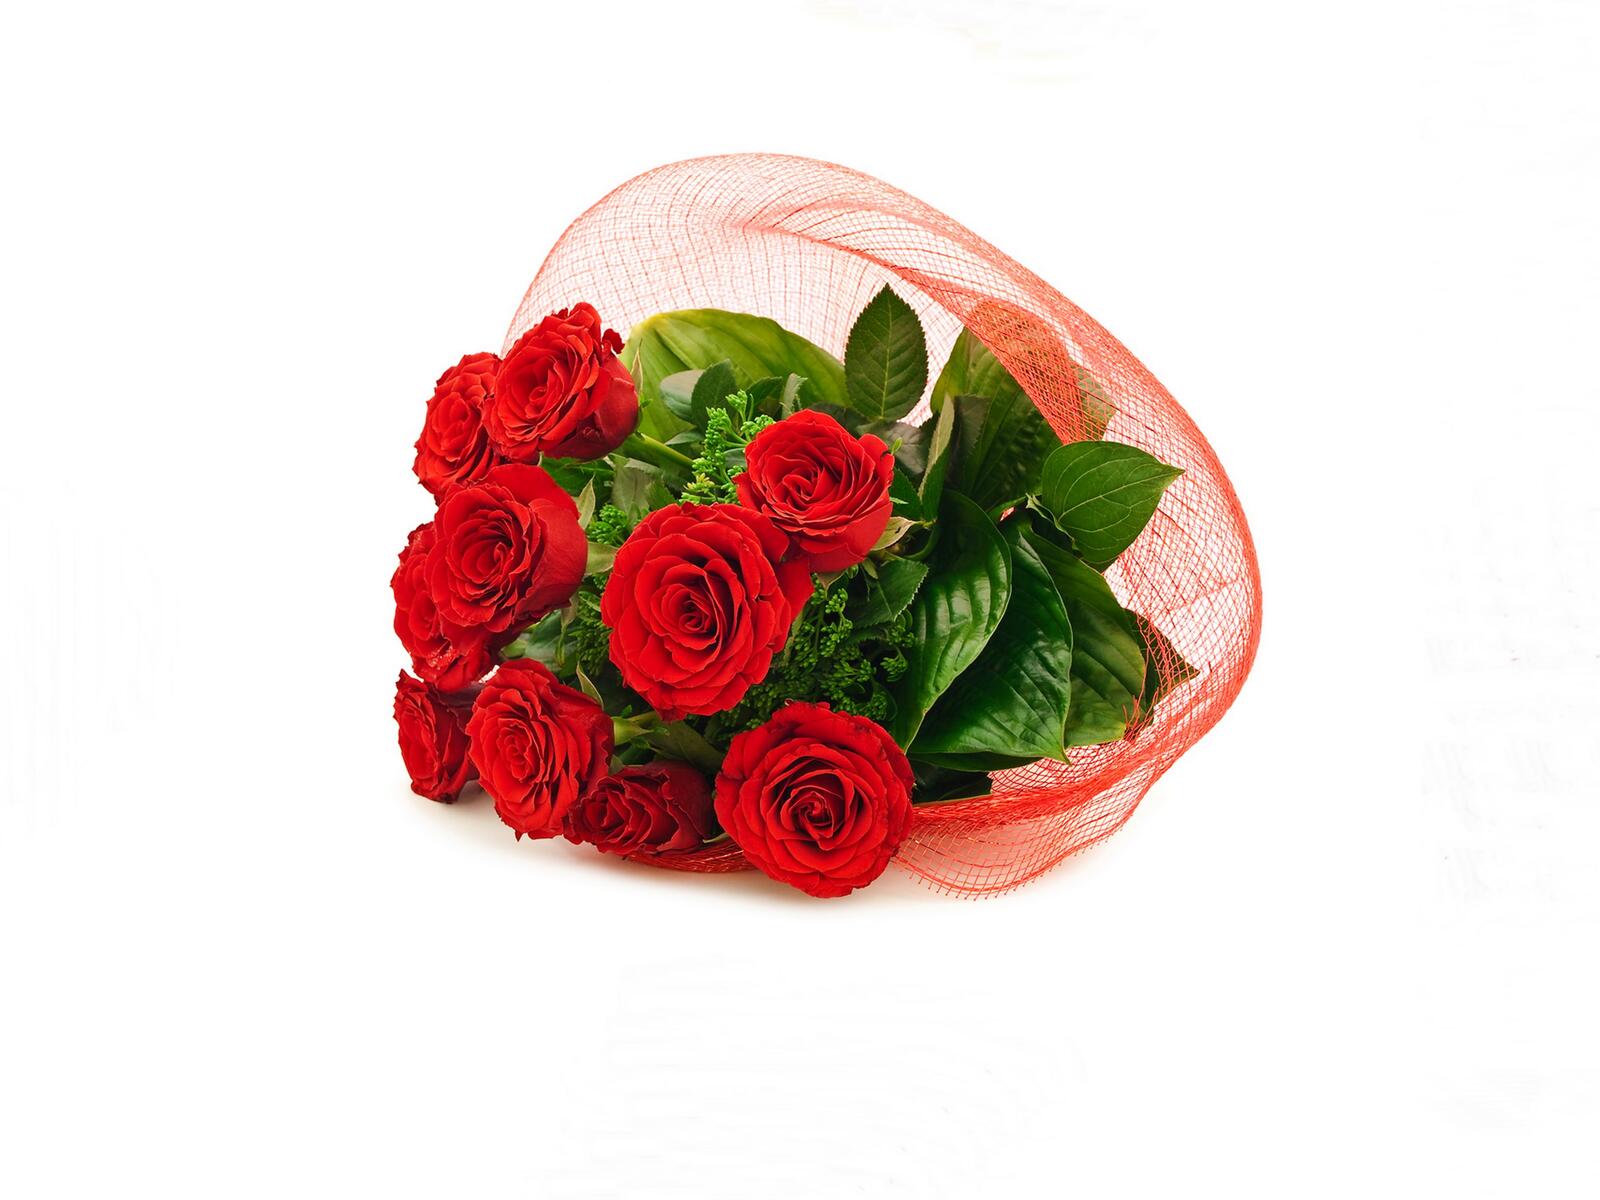 免费照片一张红色玫瑰花束的图片